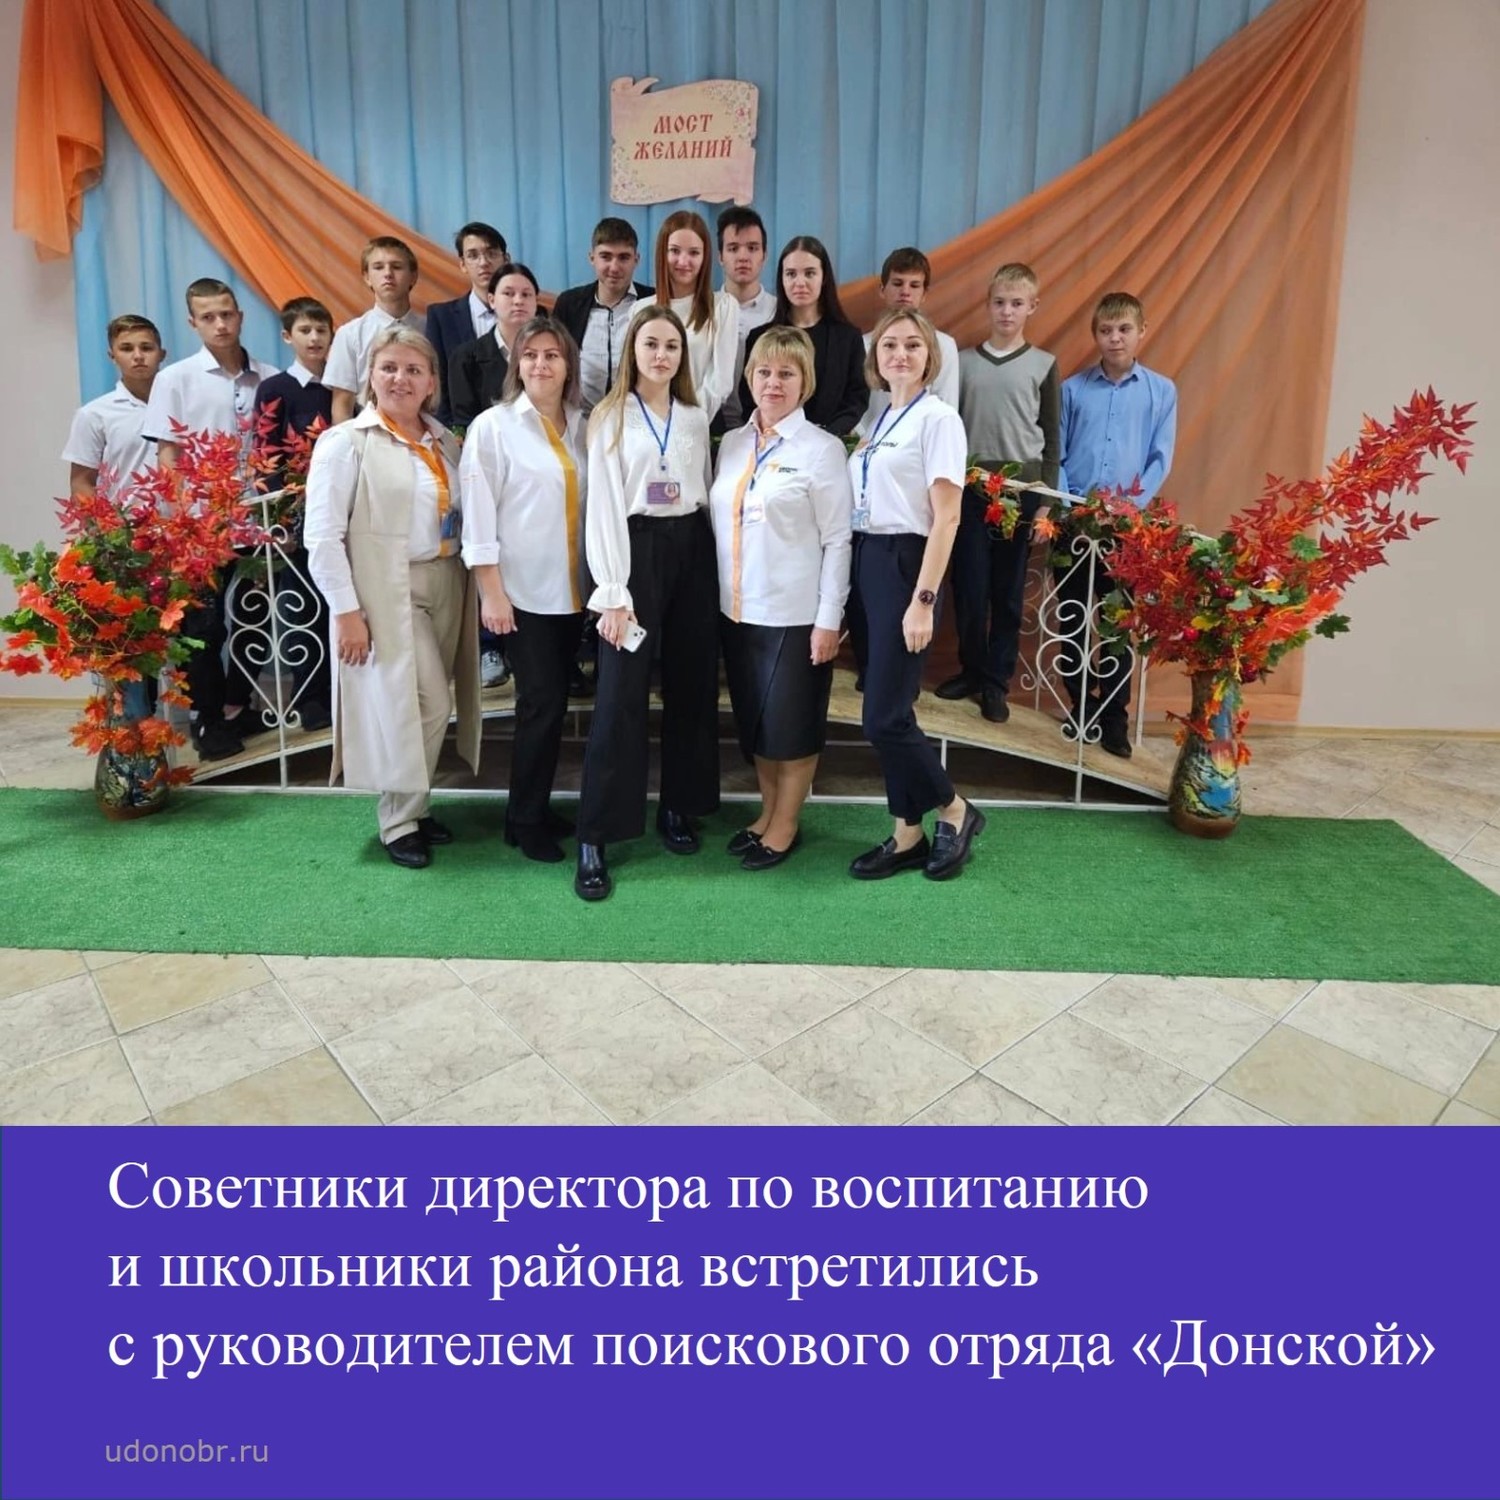 Советники директора по воспитанию и школьник района встретились с руководителем поискового отряда «Донской»